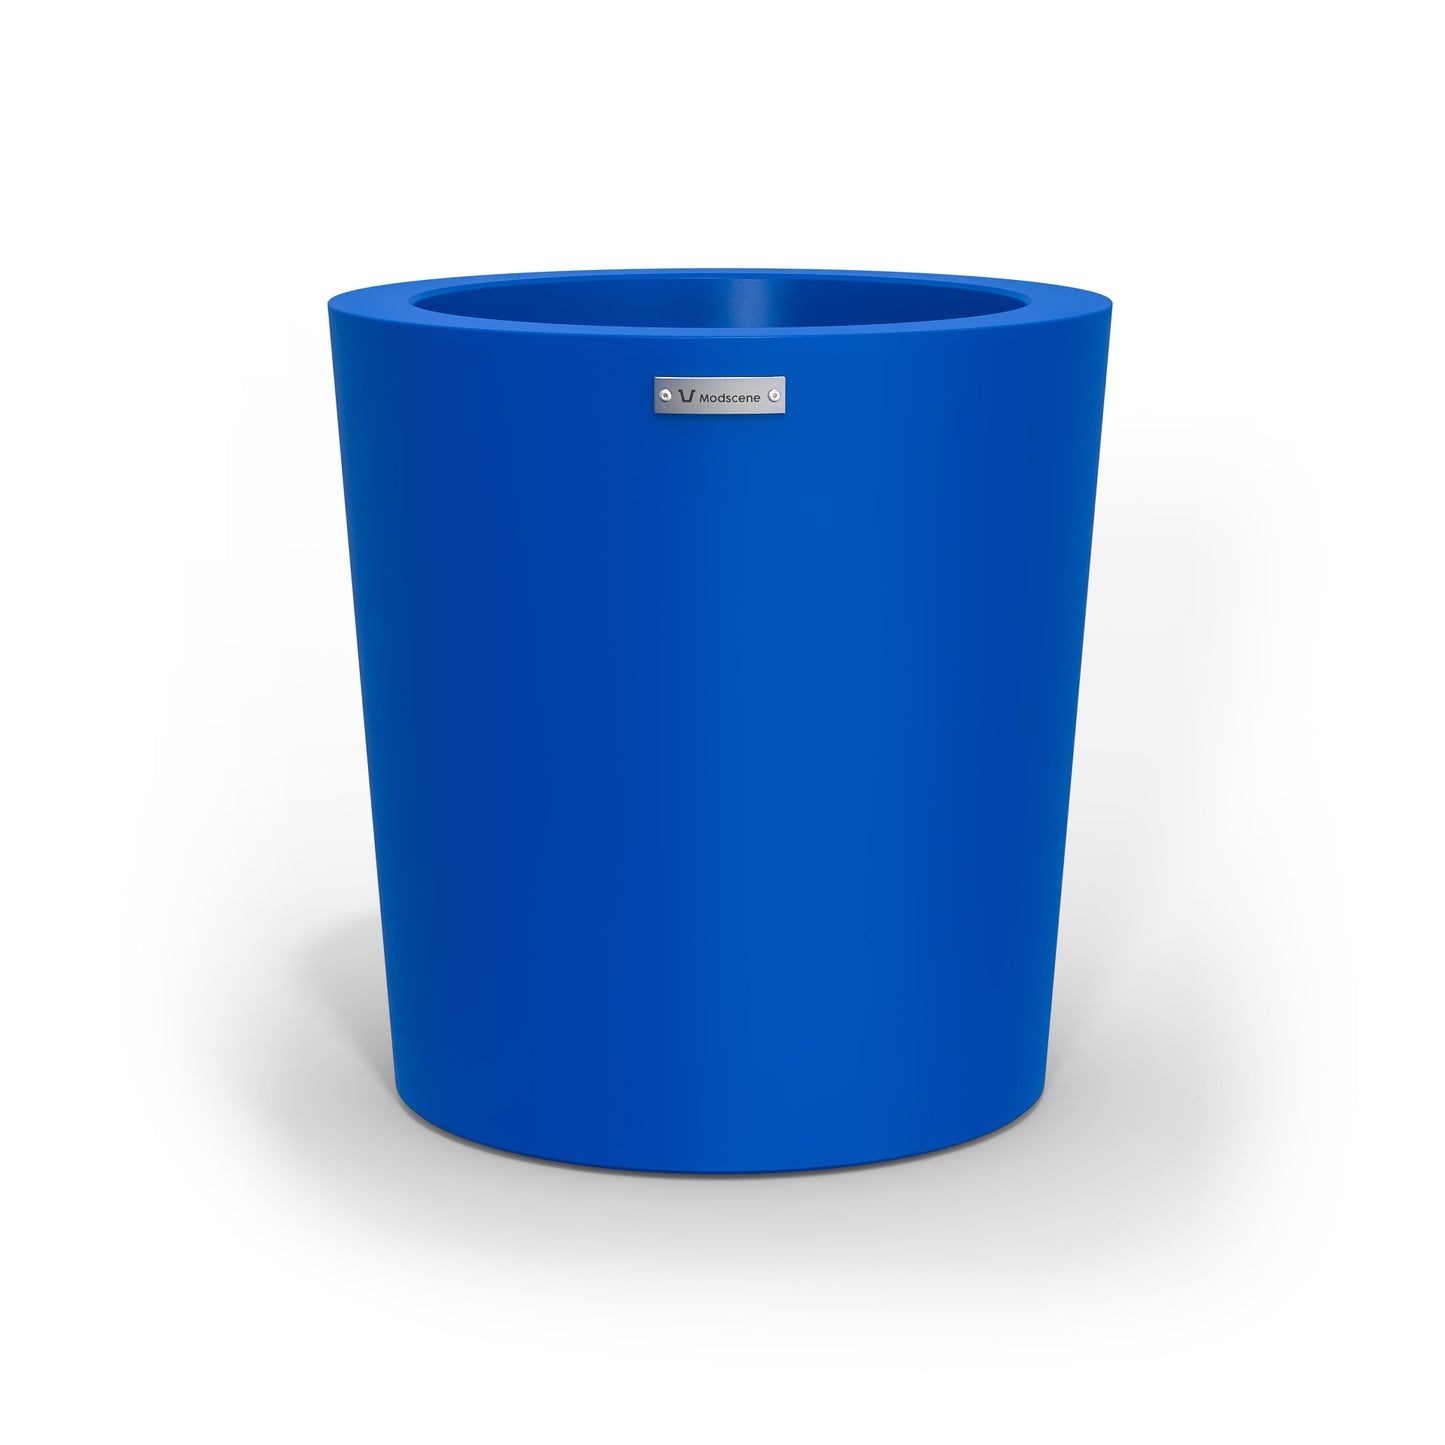 A modern designer planter pot in a royal blue colour. 